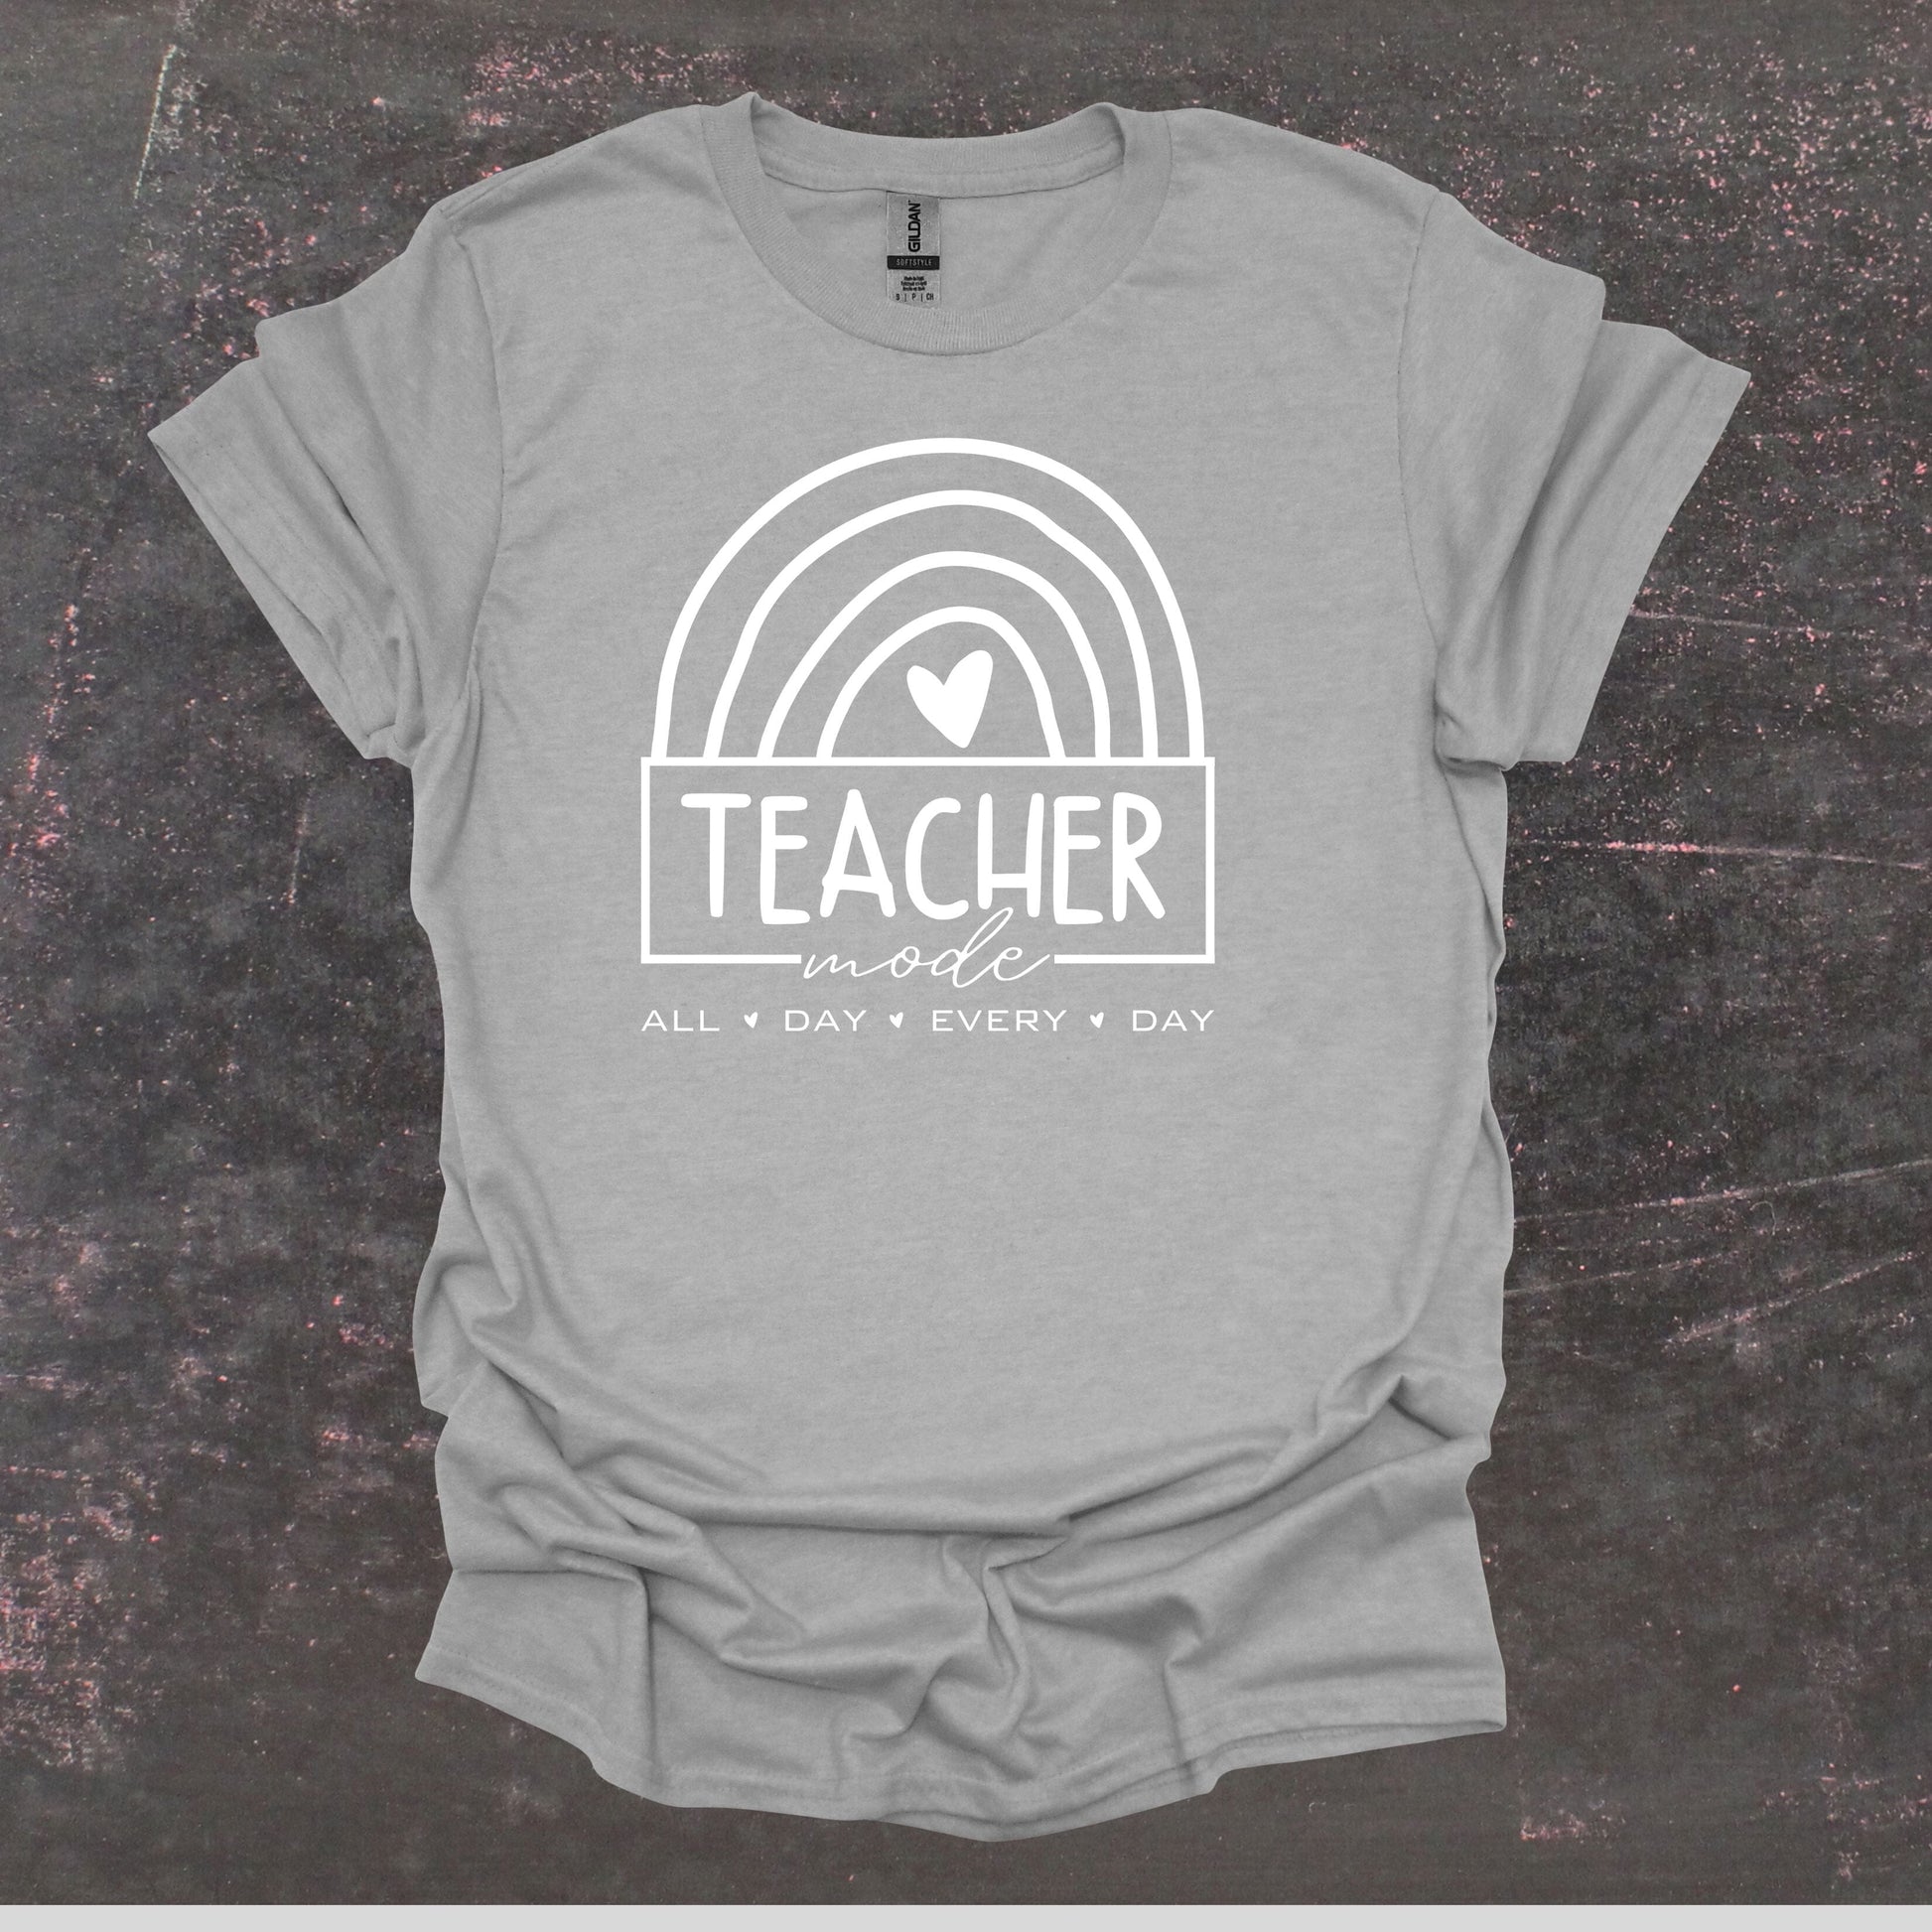 Teacher Mode - Teacher T Shirt - Adult Tee Shirts T-Shirts Graphic Avenue Sport Grey Adult Small 